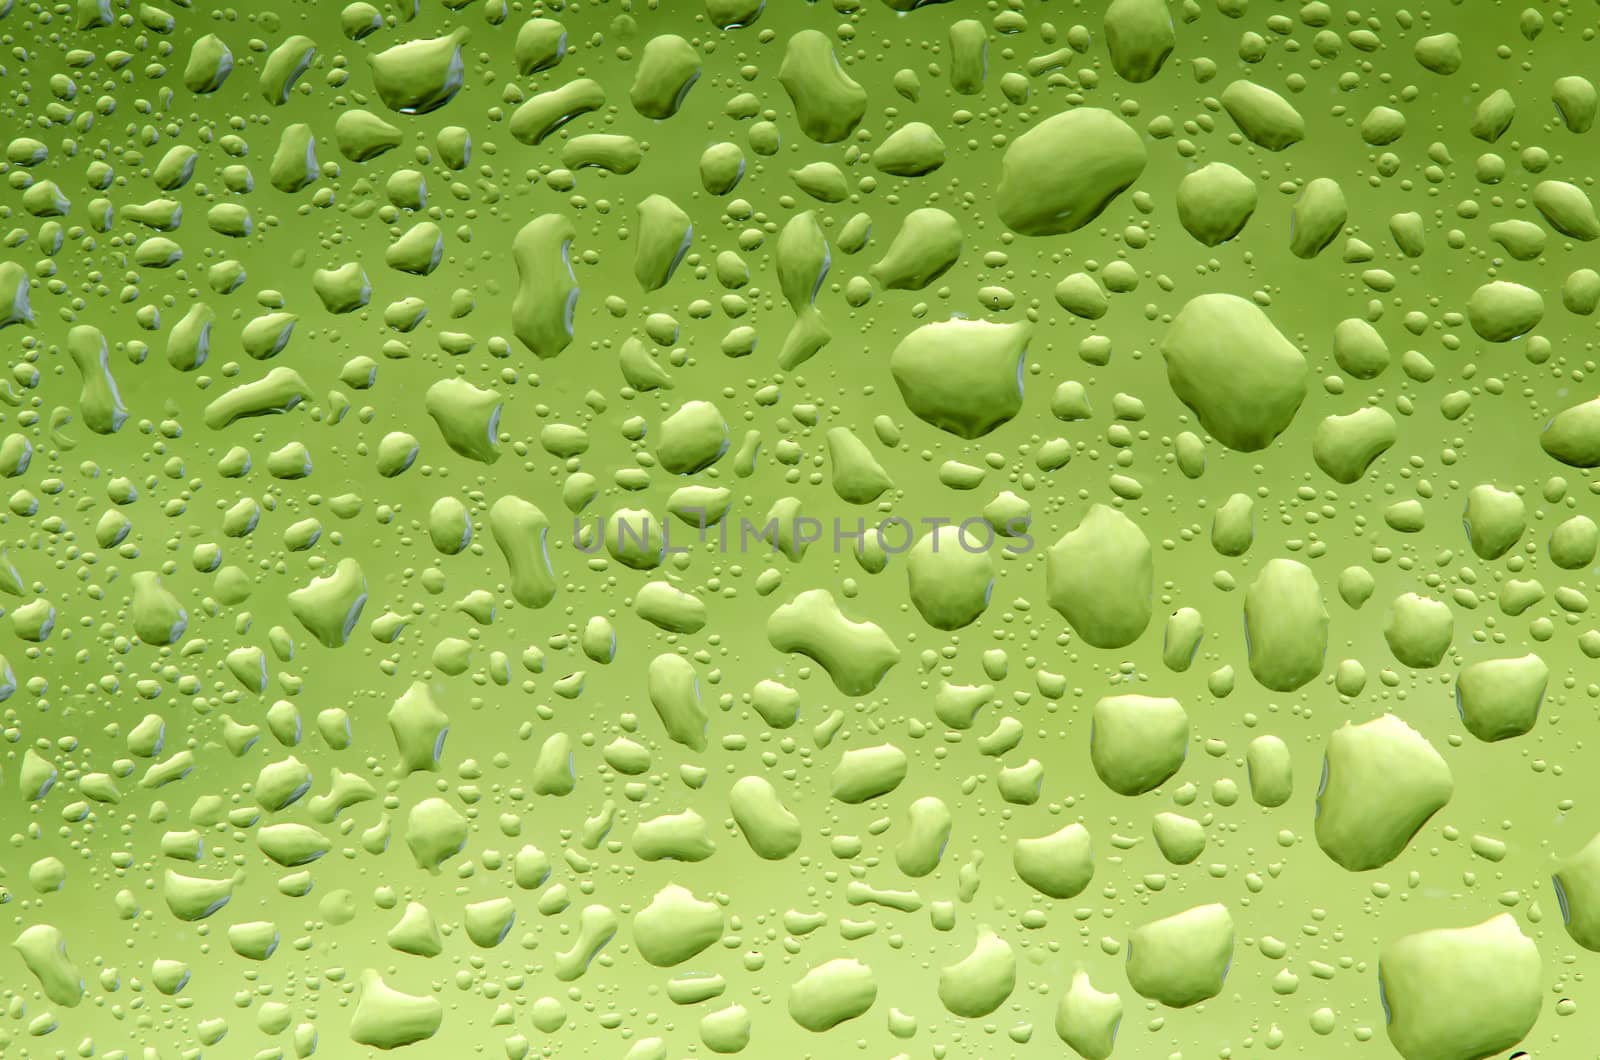 Water drops pattern by richpav